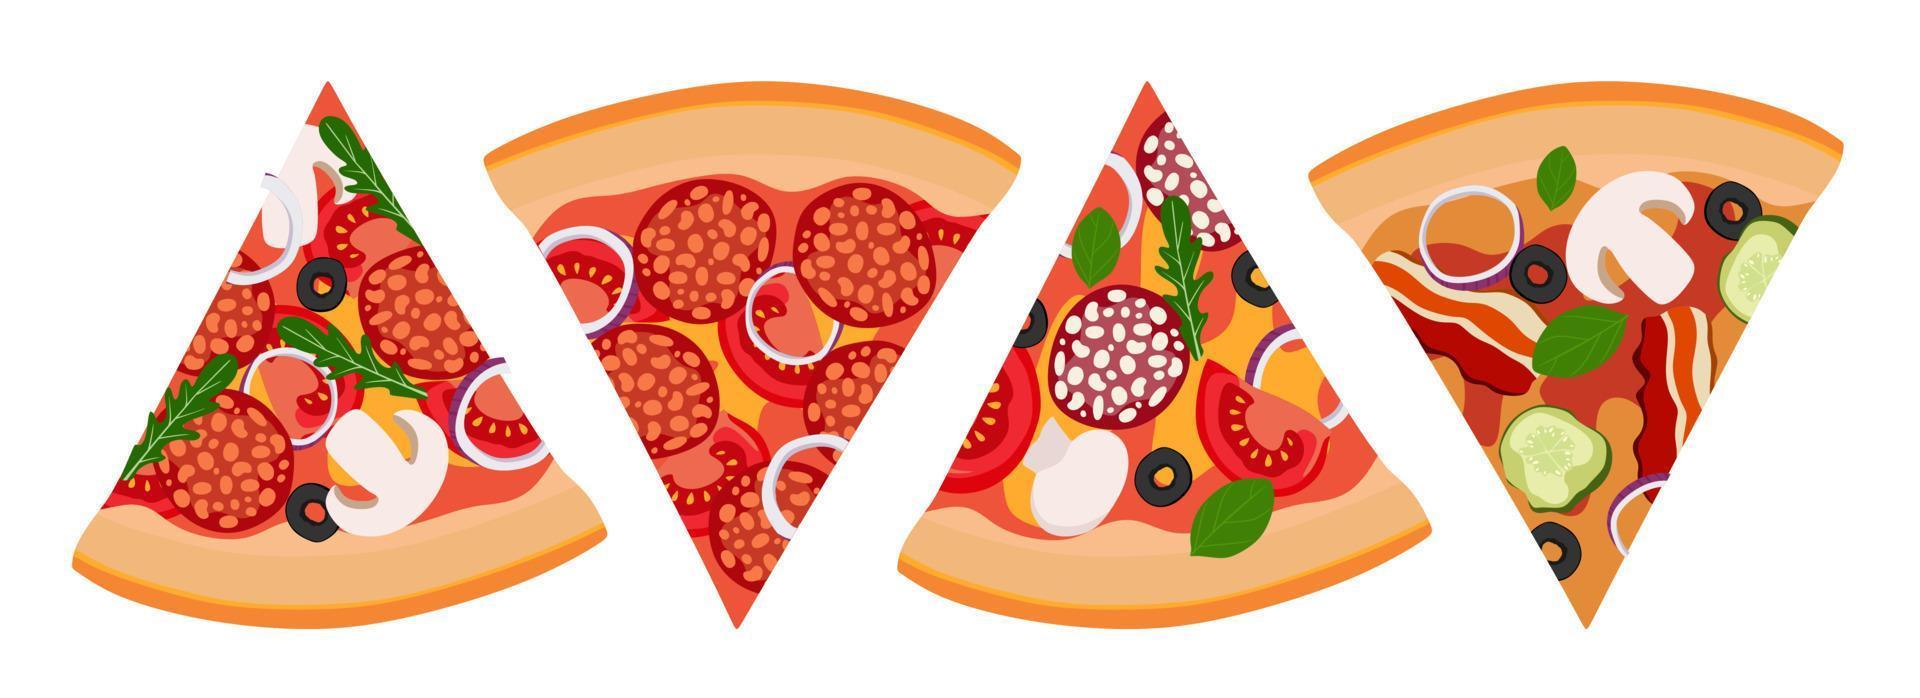 une tranche de pizza set de 4 pièces avec salami oignons tomates et olives. illustration vectorielle. un concept de stickers, affiches, cartes postales, vecteur